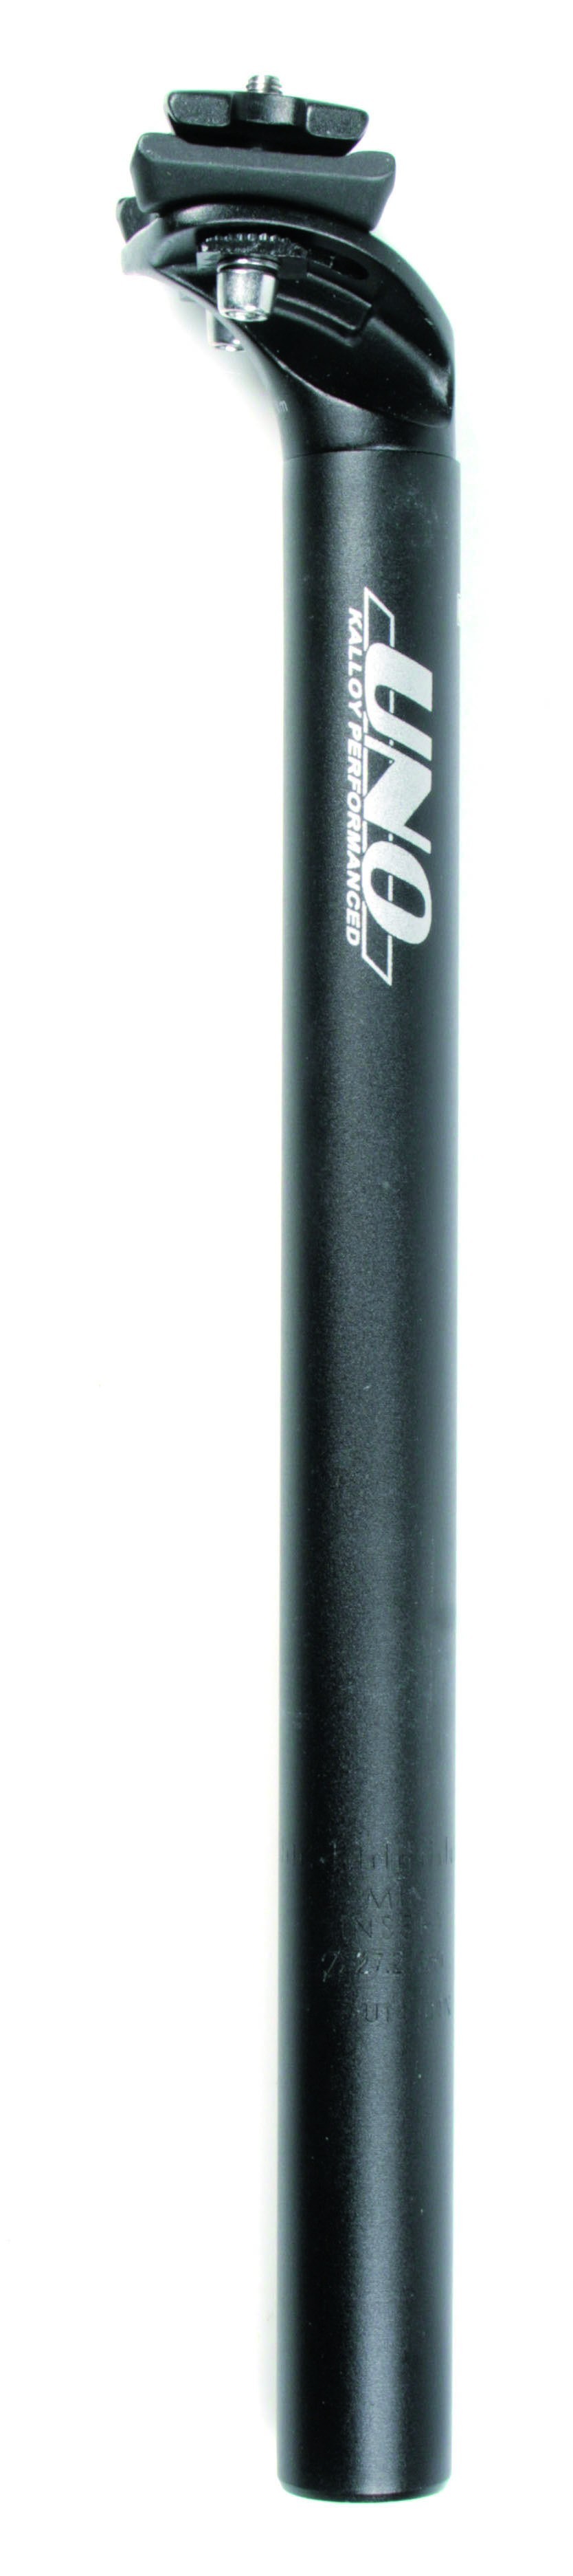 Tige de selle amortisseur vtt 27.2 longueur 245 mm, au meilleur prix